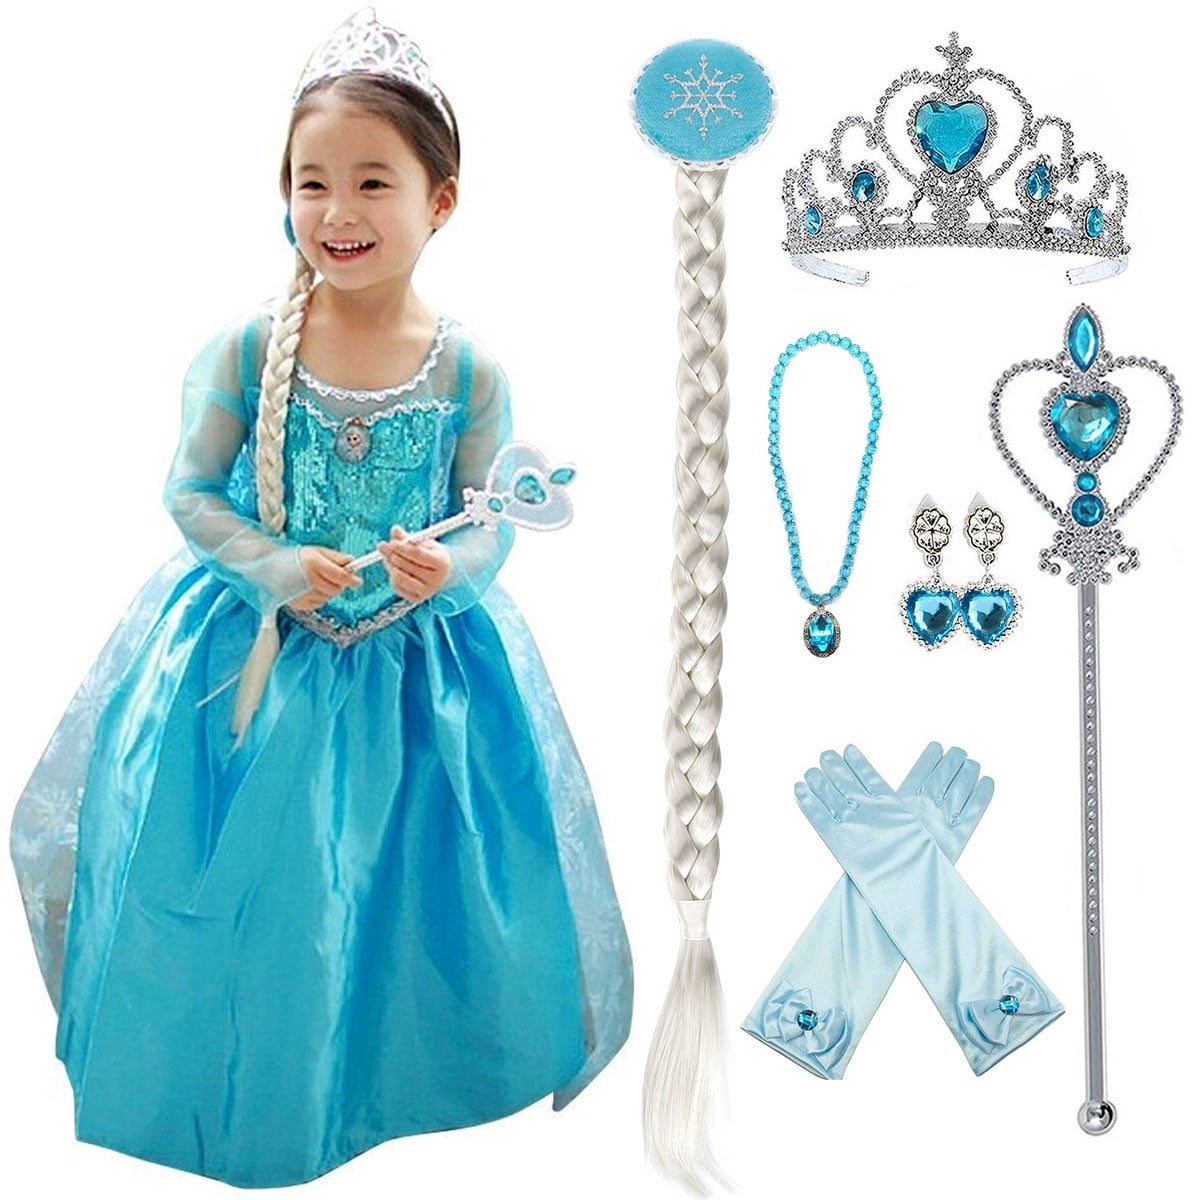 frozen costume for baby girl